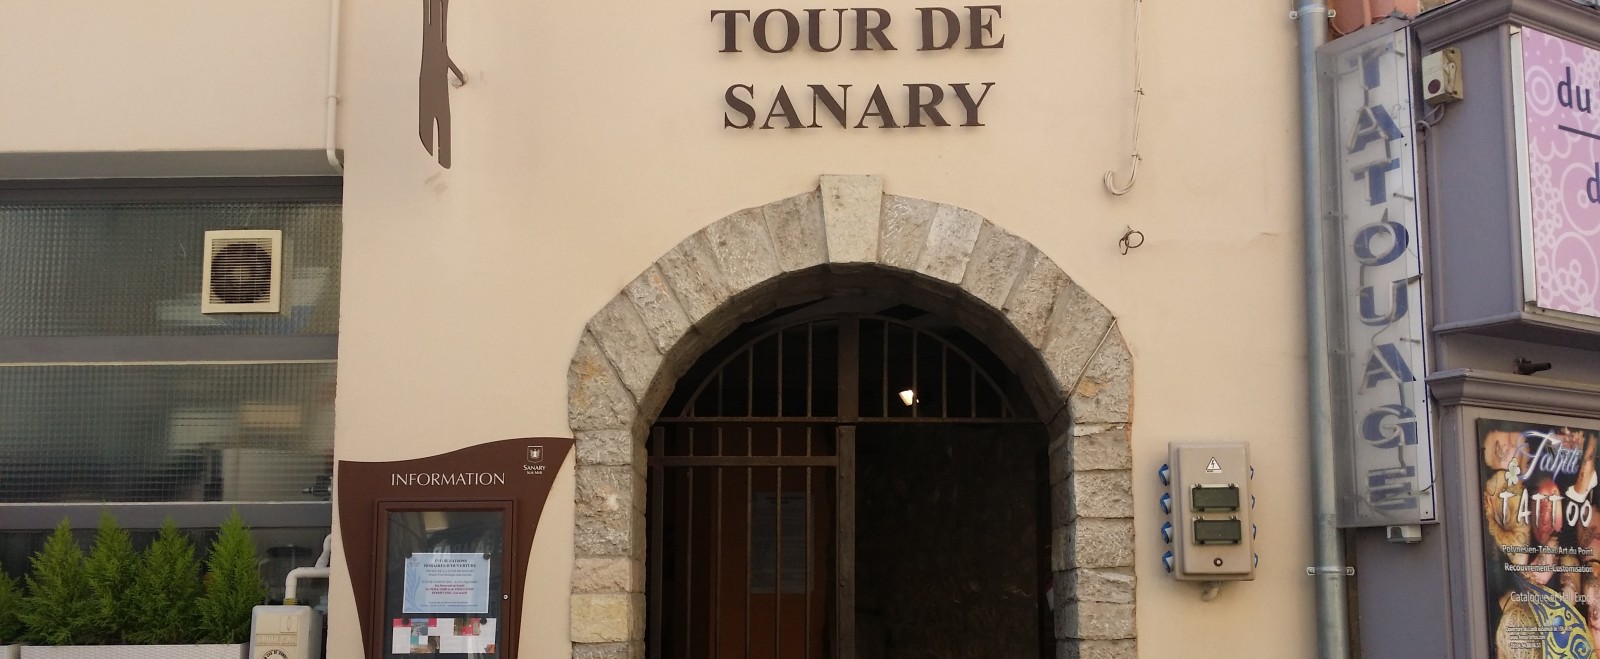 Le Musée Archéologique de la Tour de Sanary